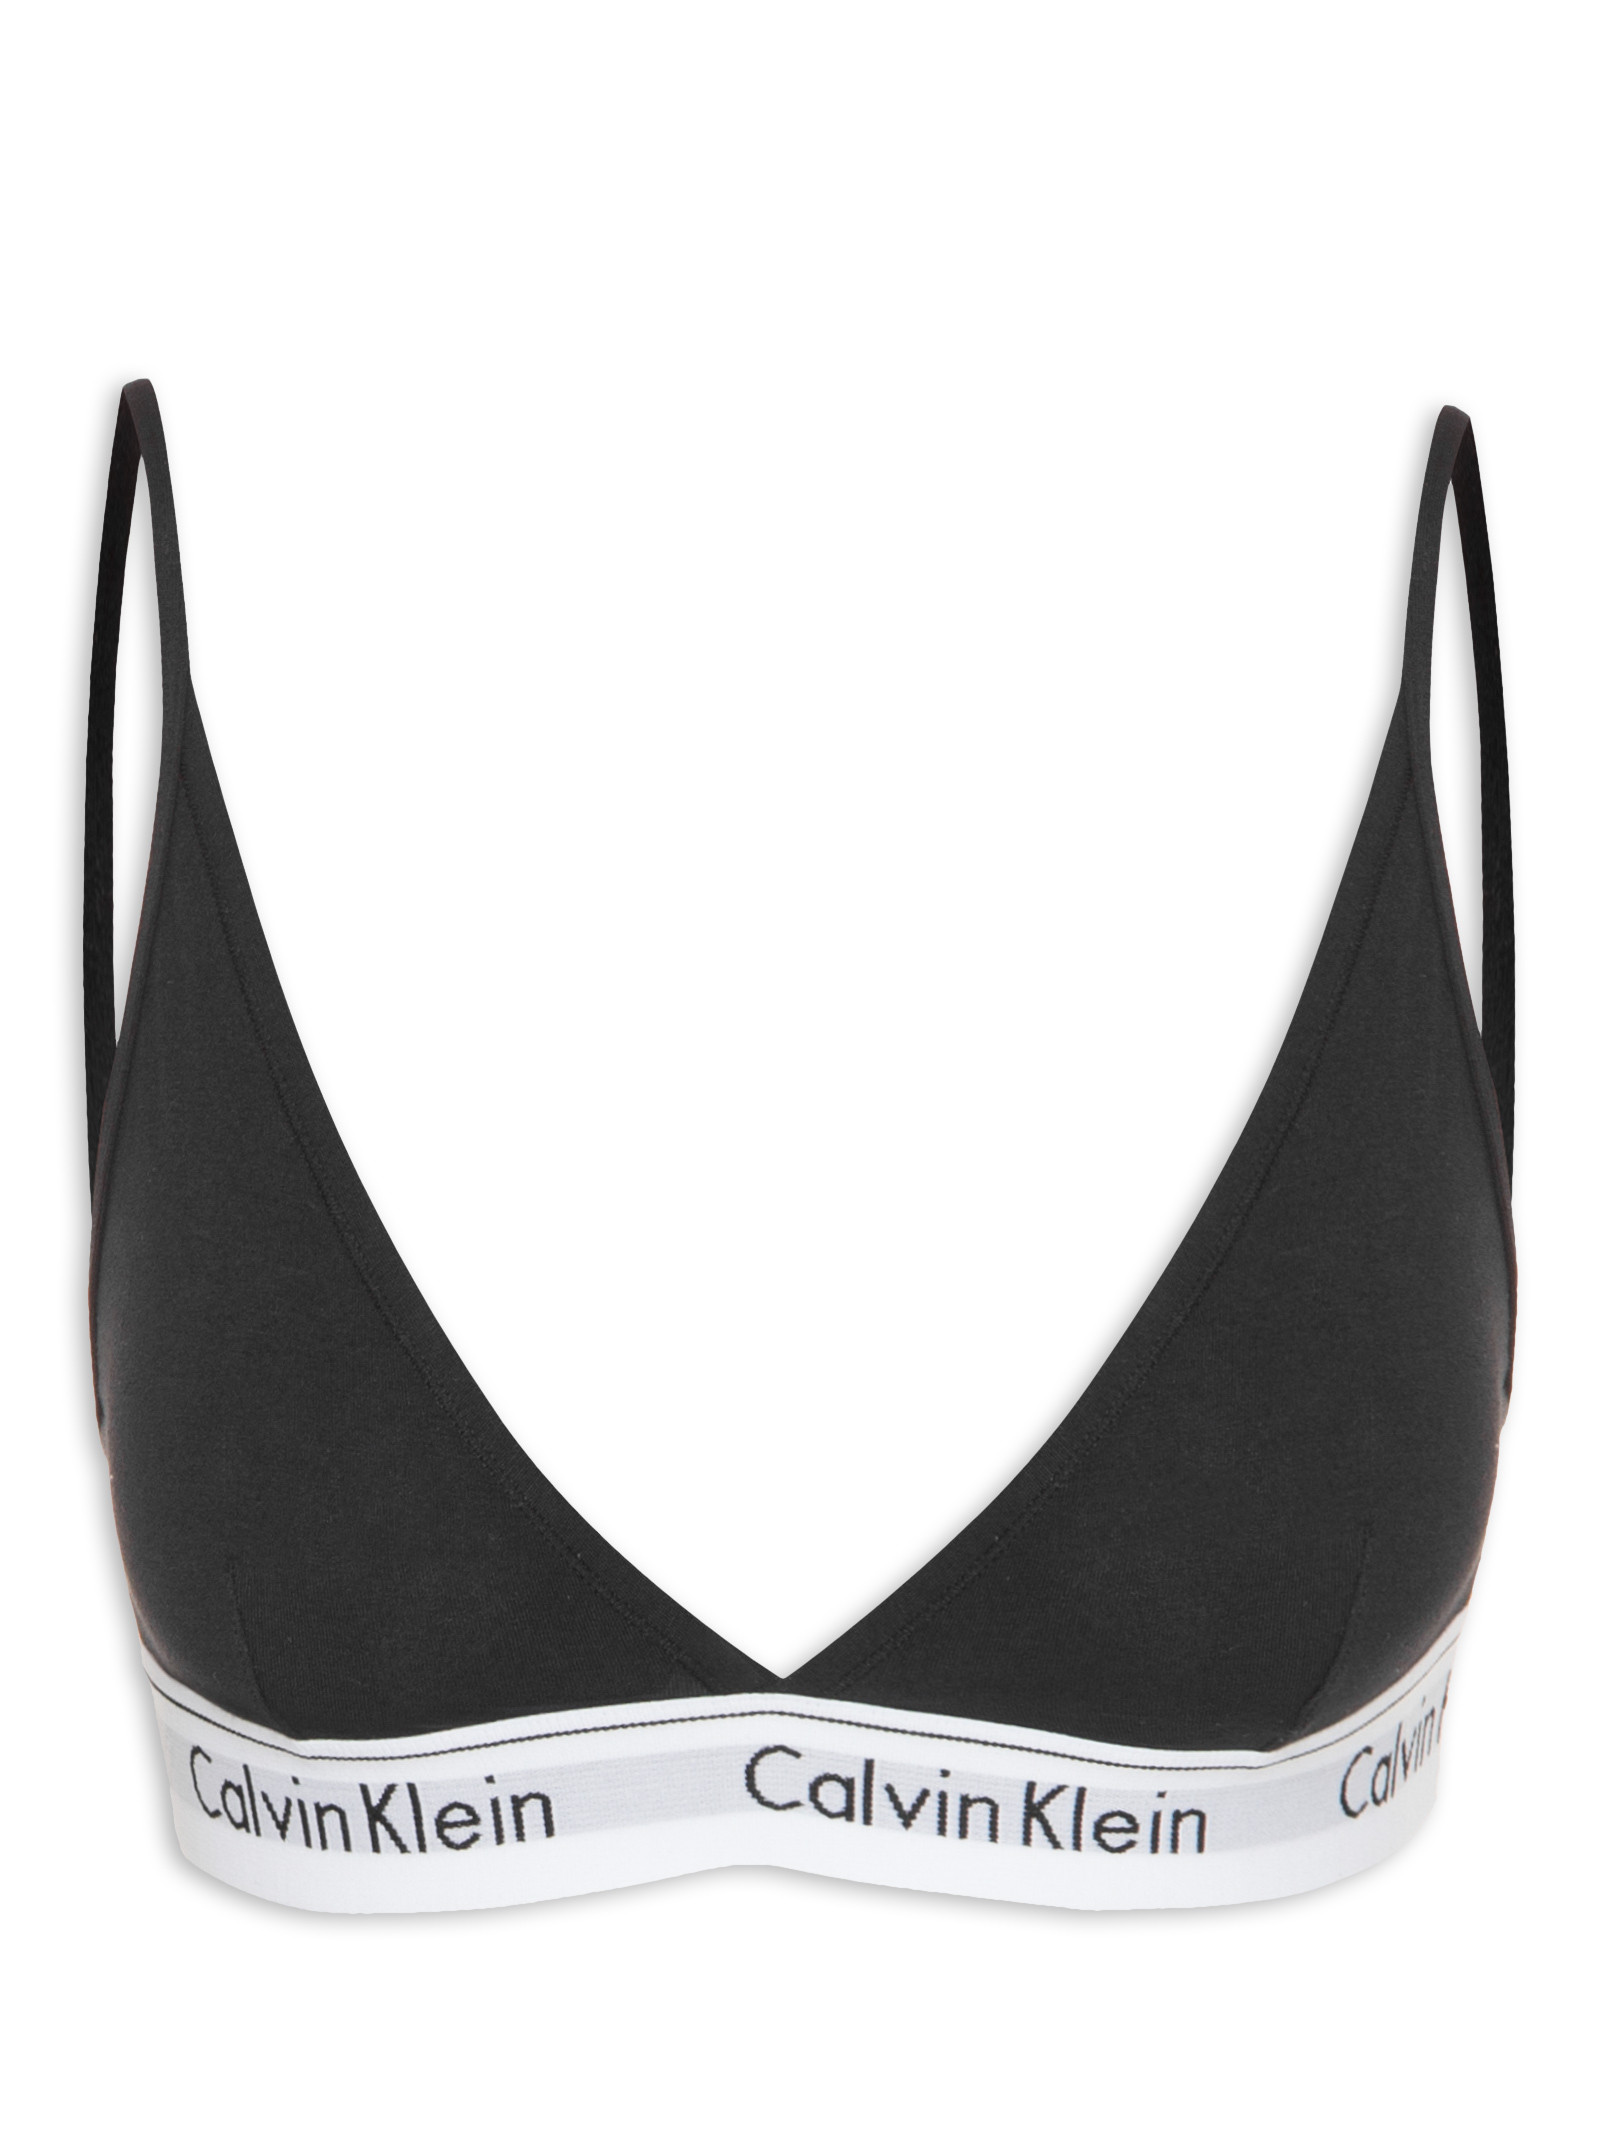 Top Triângulo Modern Cotton - Calvin Kleans Underwear - Preto